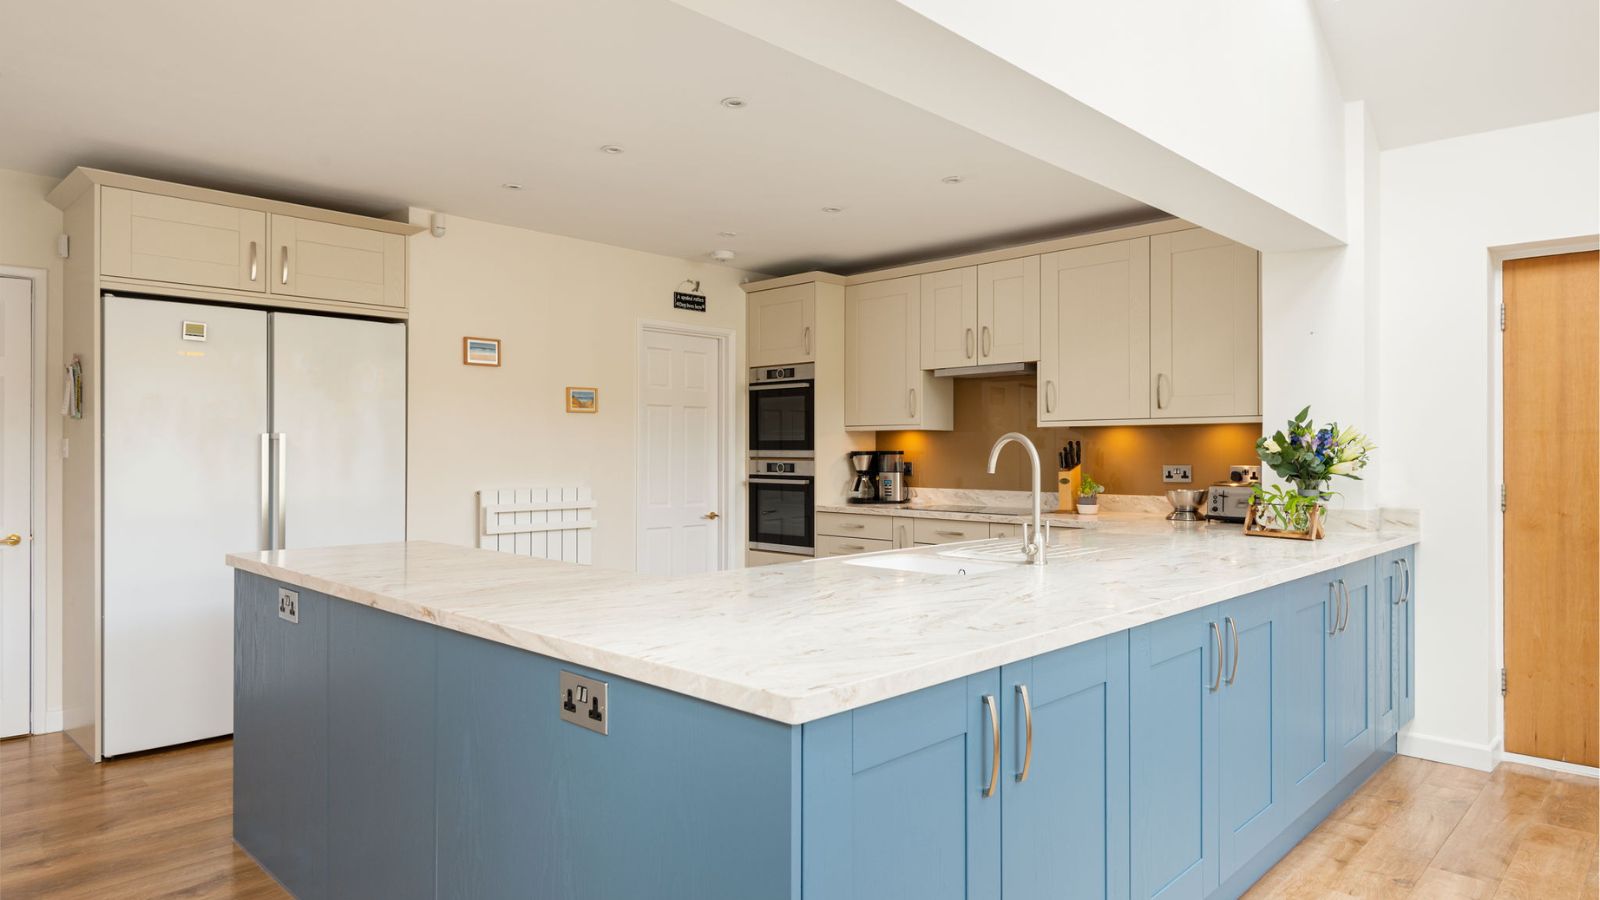 What colour walls match blue kitchen units?